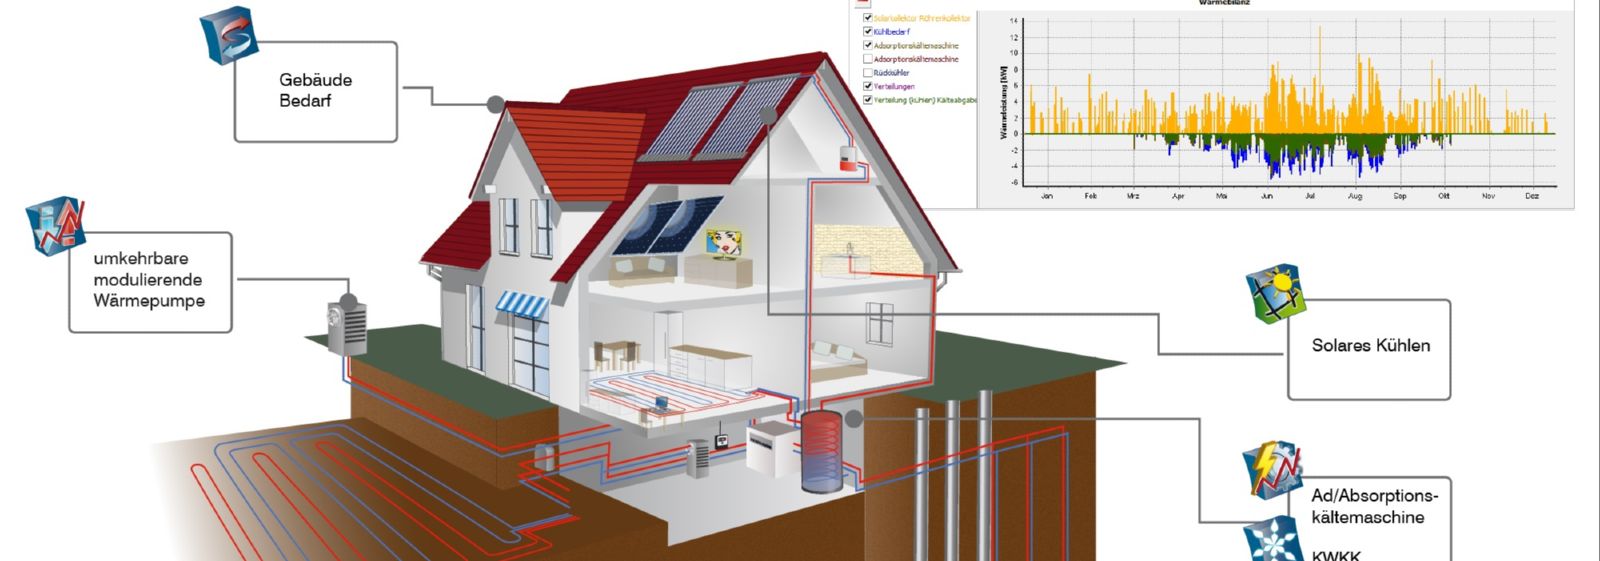 Coolplan unterstützt die Planung von Kälteanlagen. Konventionelle und regenerative Kühlsysteme für Gebäude können unter technischen und wirtschaftlichen Aspekten simuliert und verglichen werden.